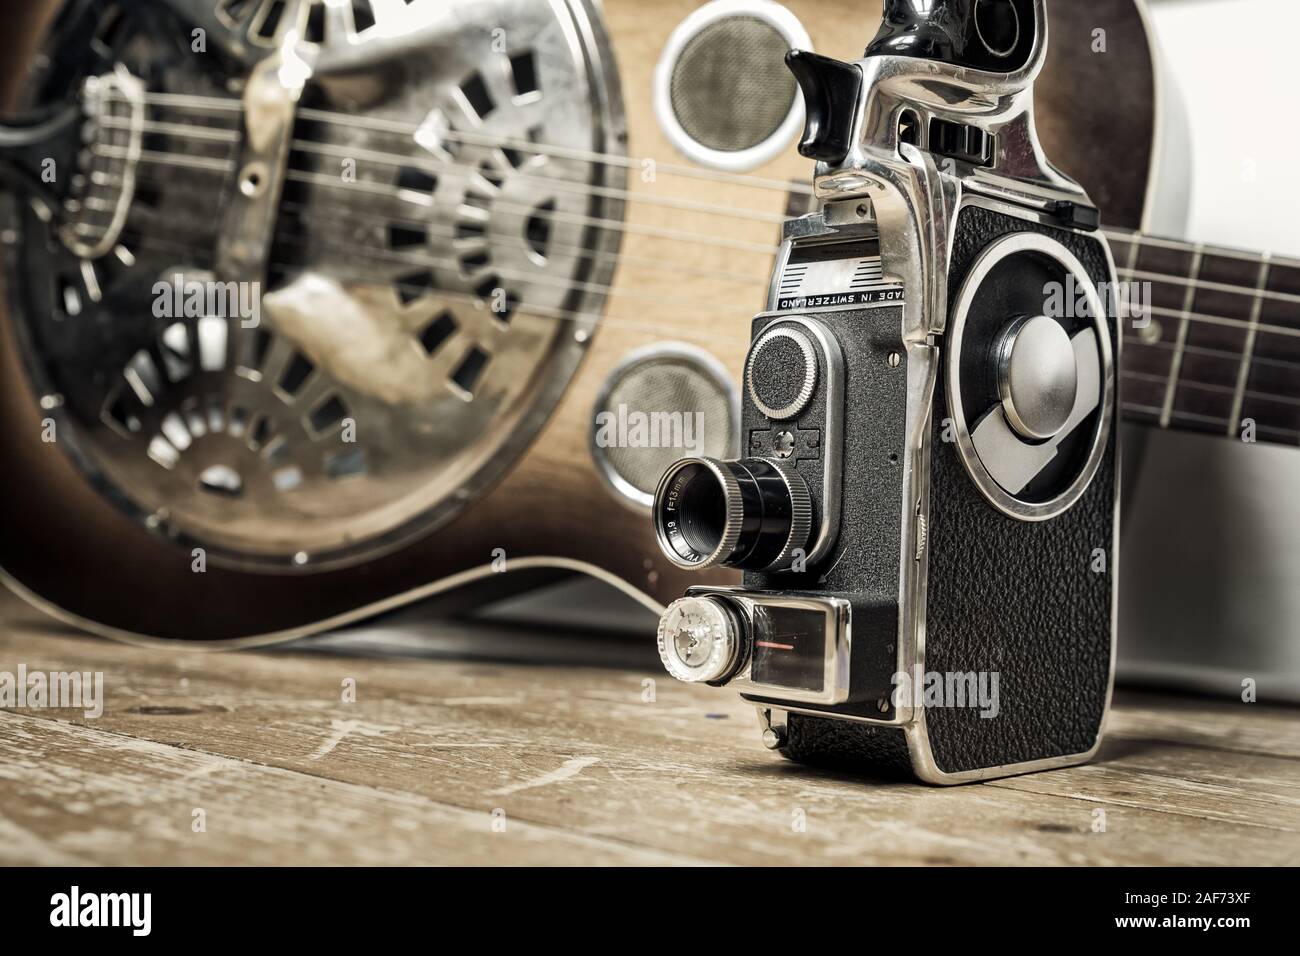 Un film Vintage fotocamera è visibile su un pavimento di legno con una chitarra Dobro come sfondo Foto Stock